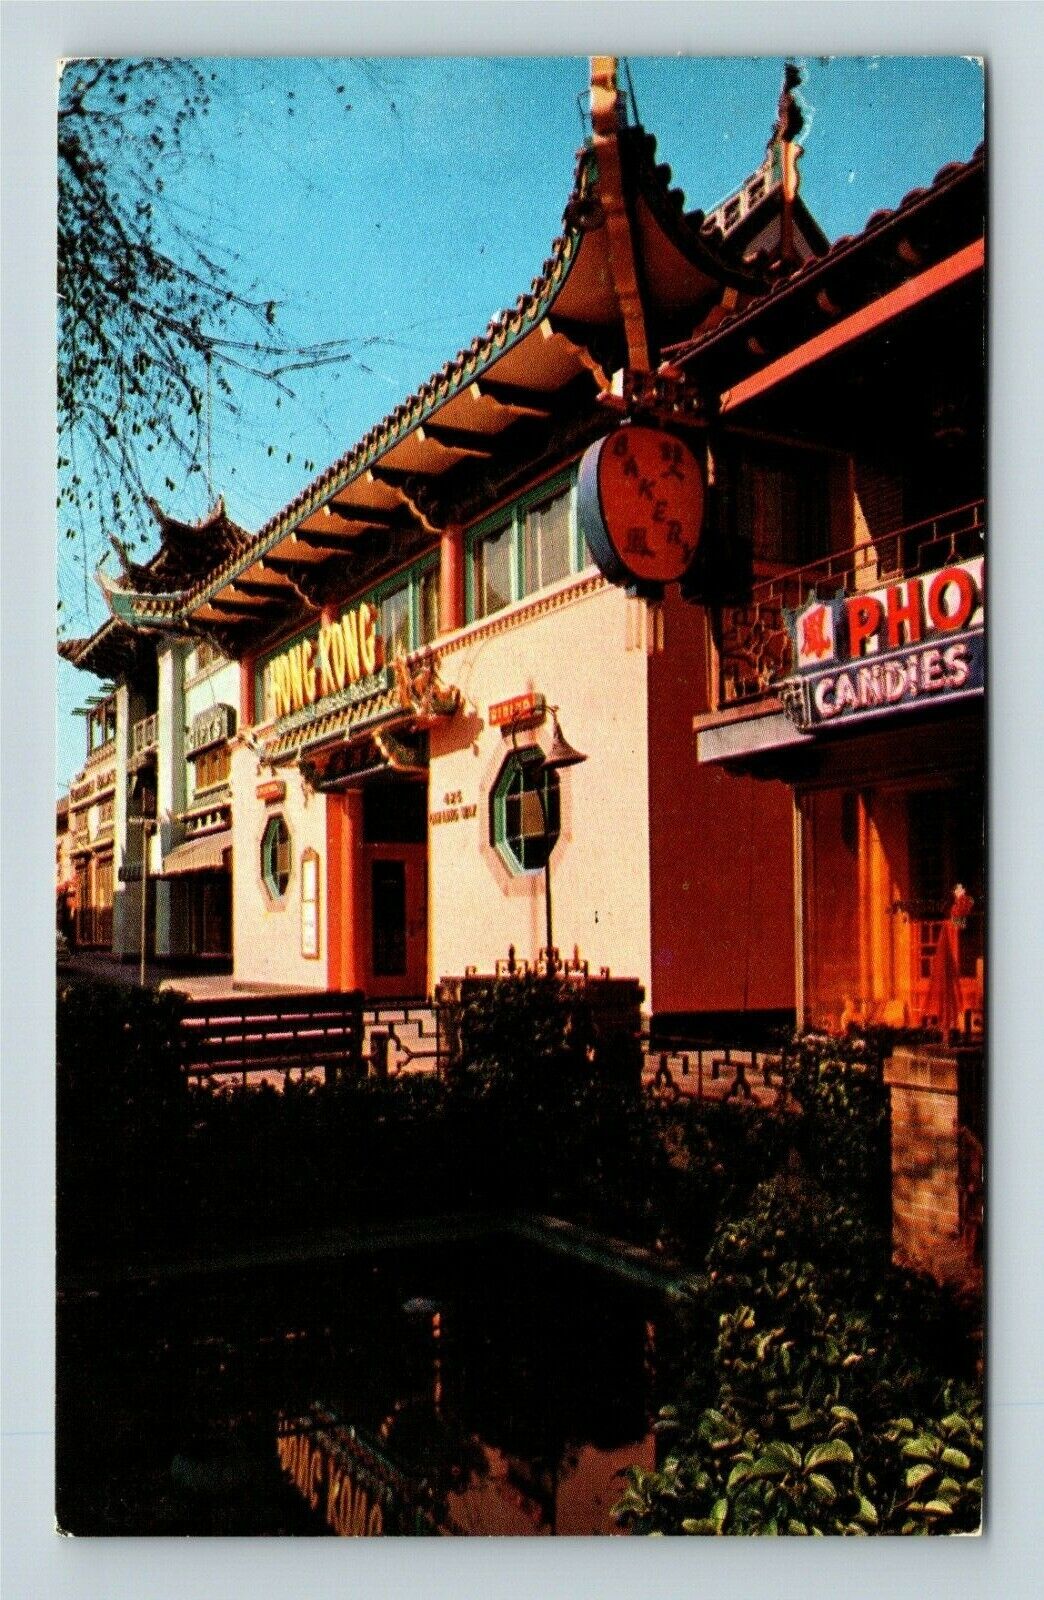 New Chinatown, Oriental, Nightclubs, Restaurants, c1958 Vintage Postcard